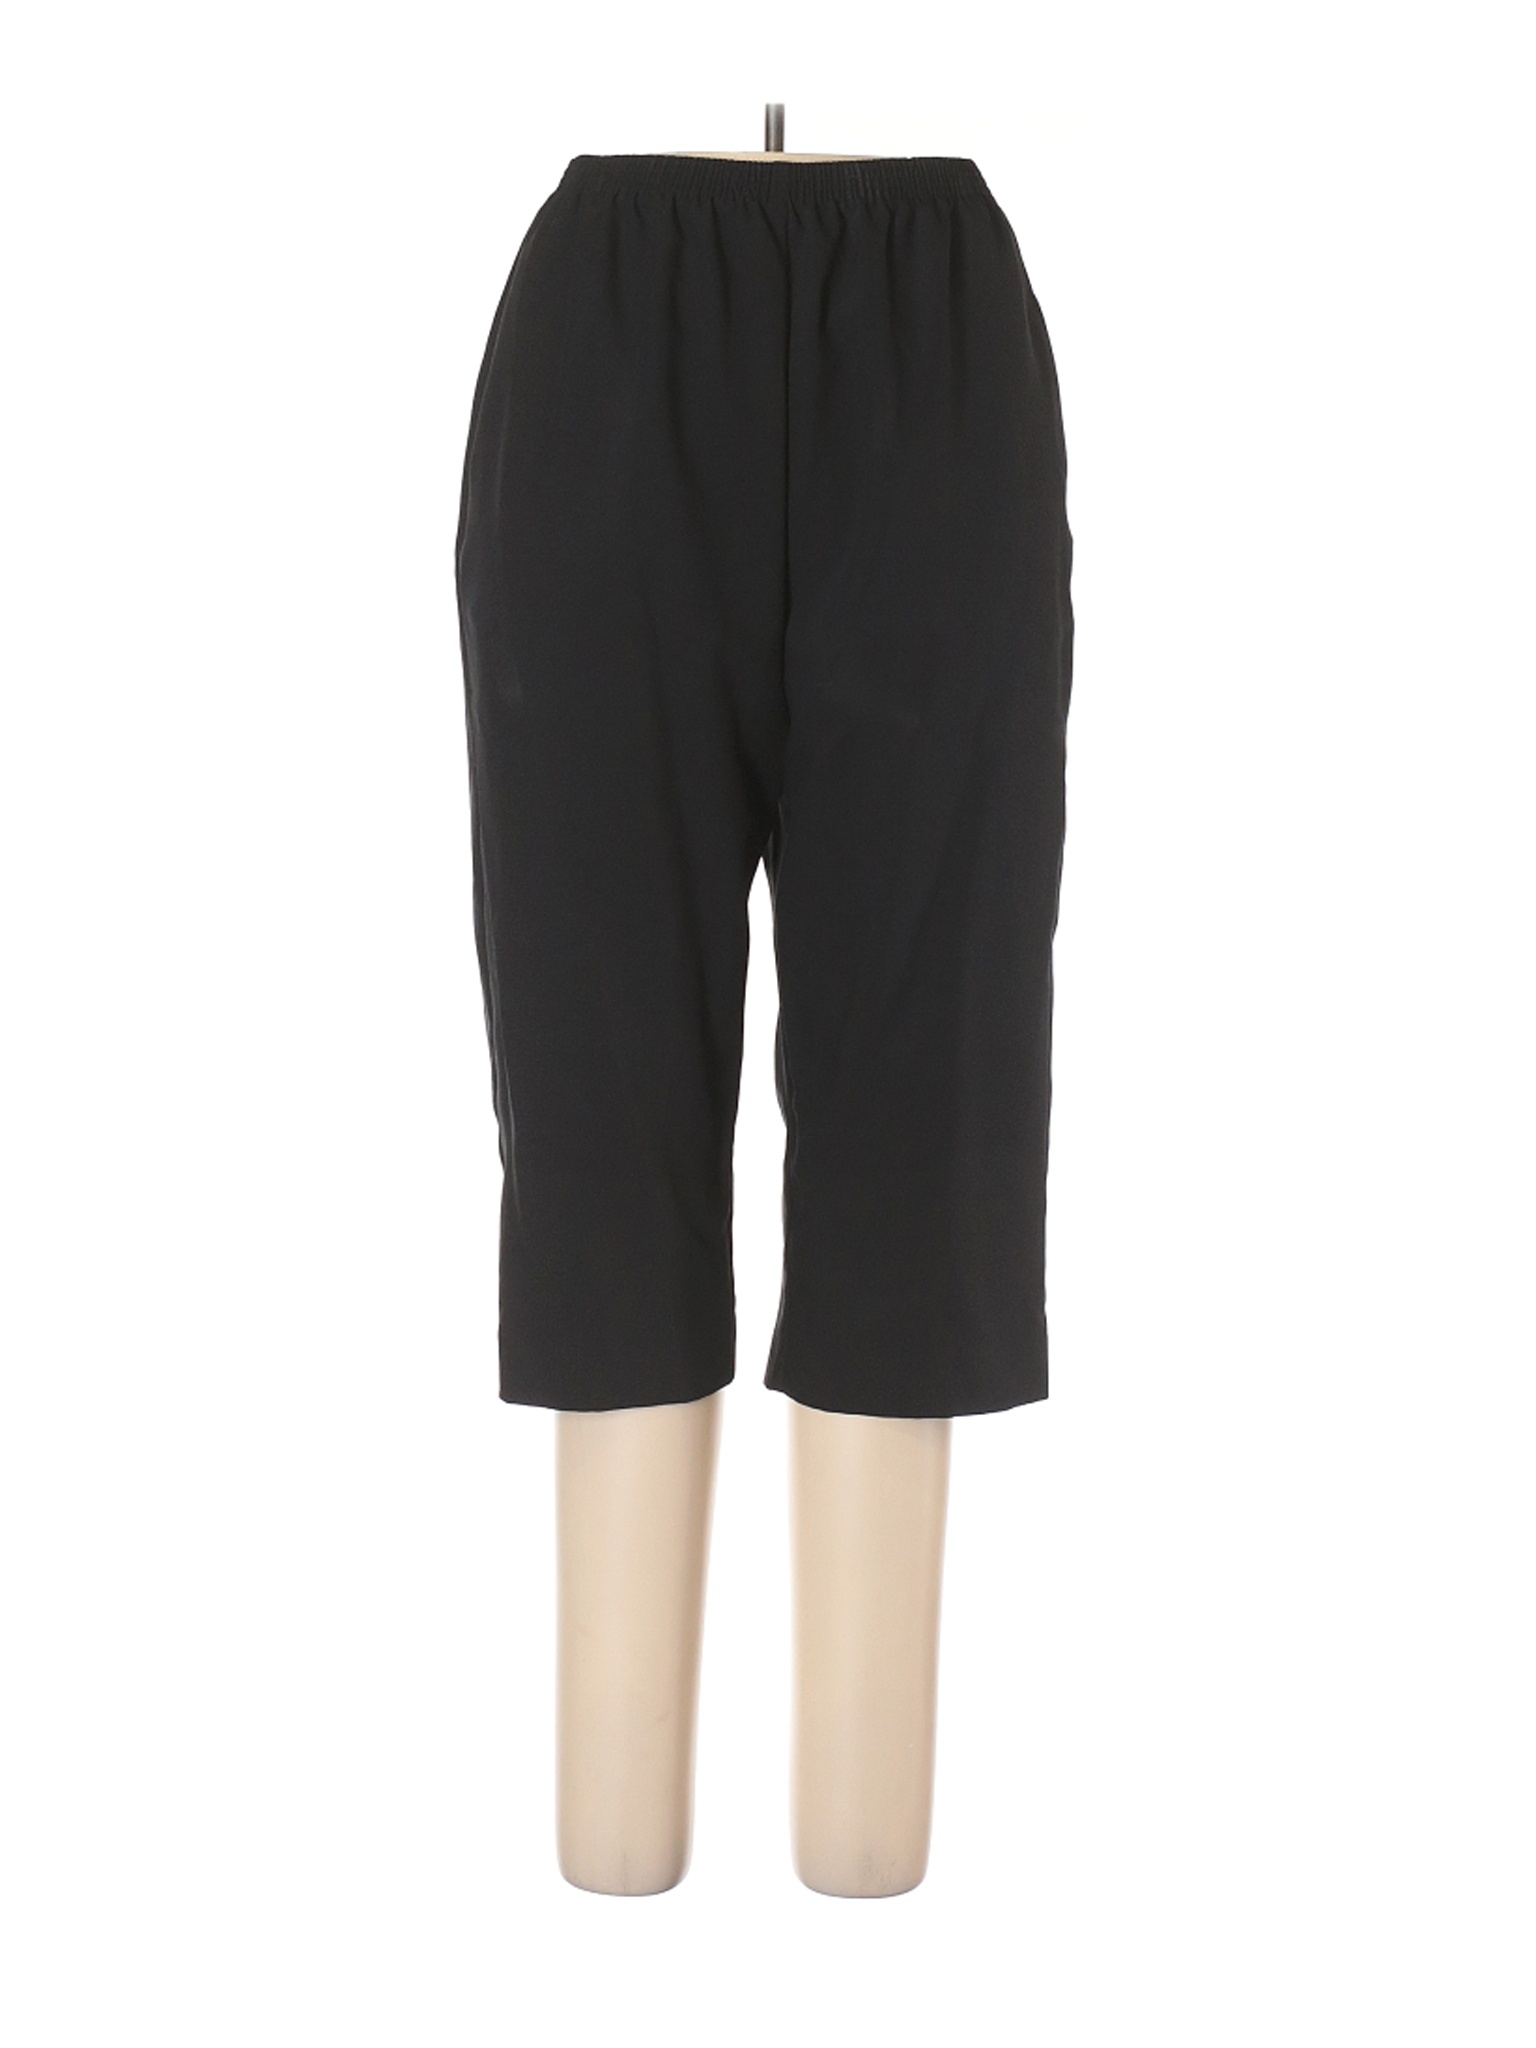 Alfred Dunner Women Black Dress Pants 14 | eBay